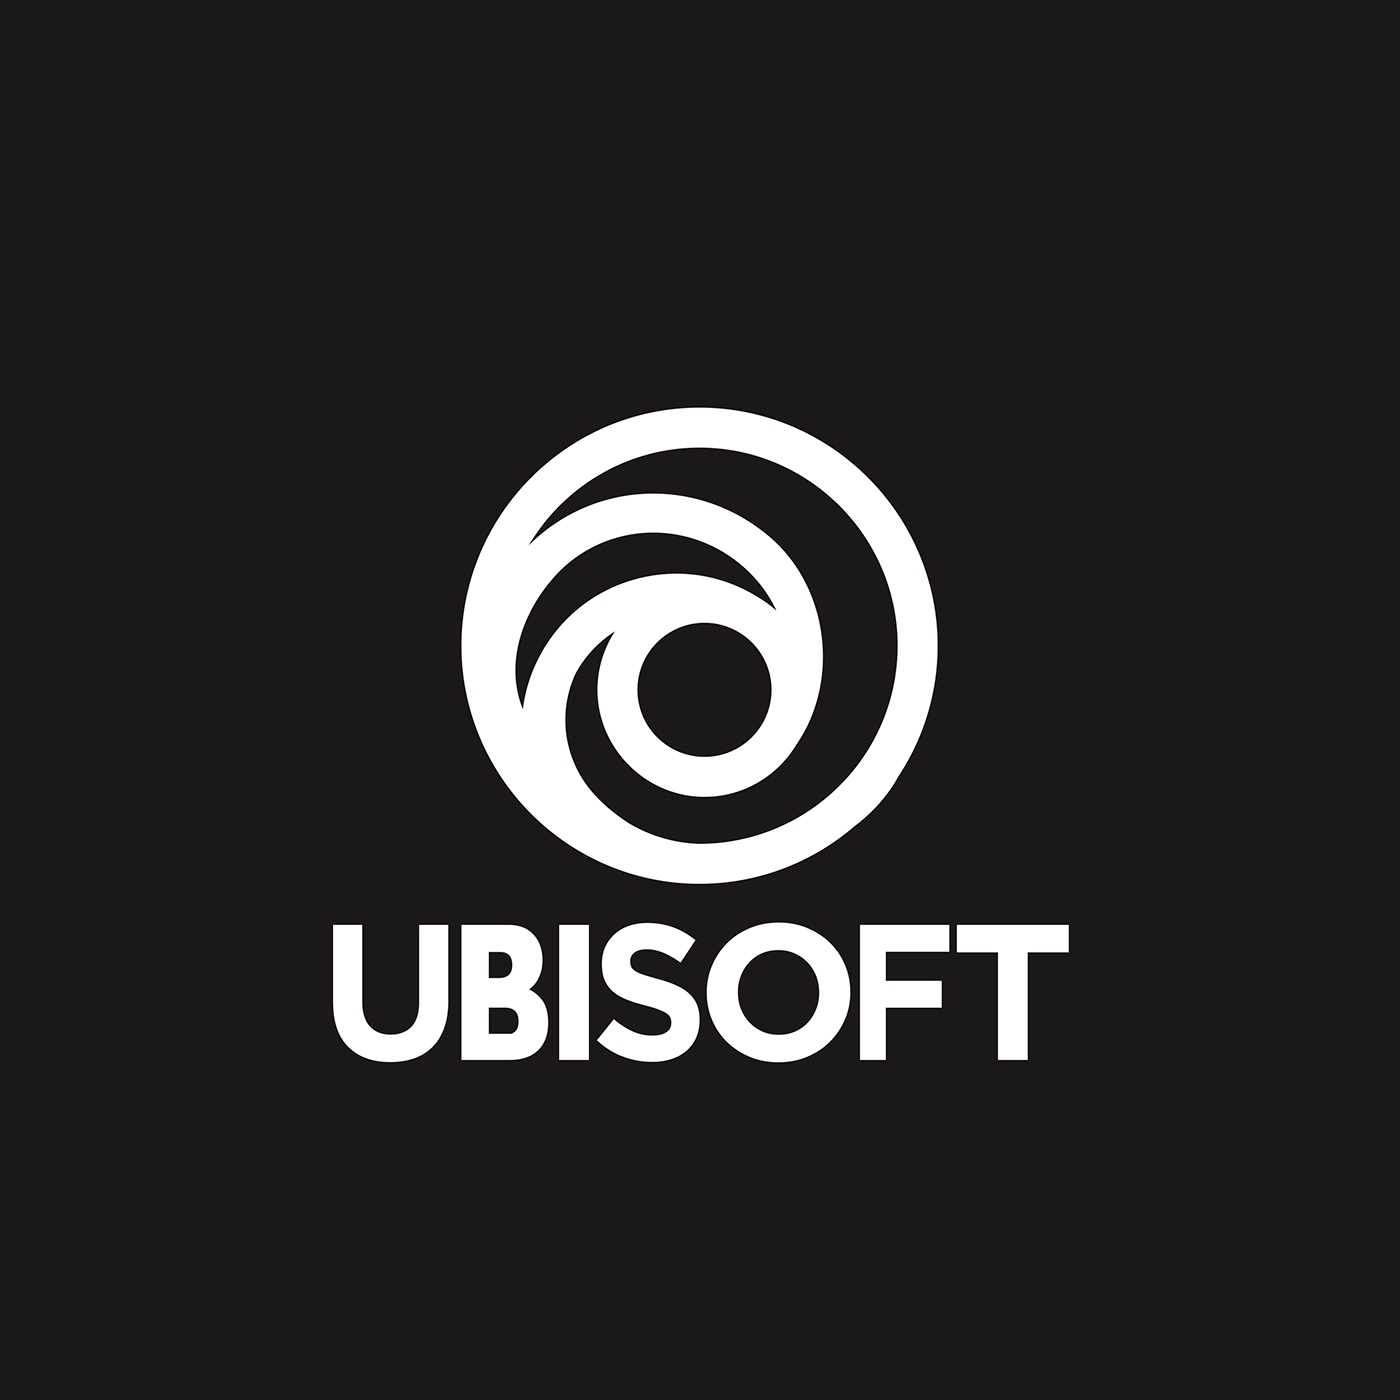 Юбисофт. Q,BCJAN. Юбисофт лого. Юплей. Ubisoft uplay